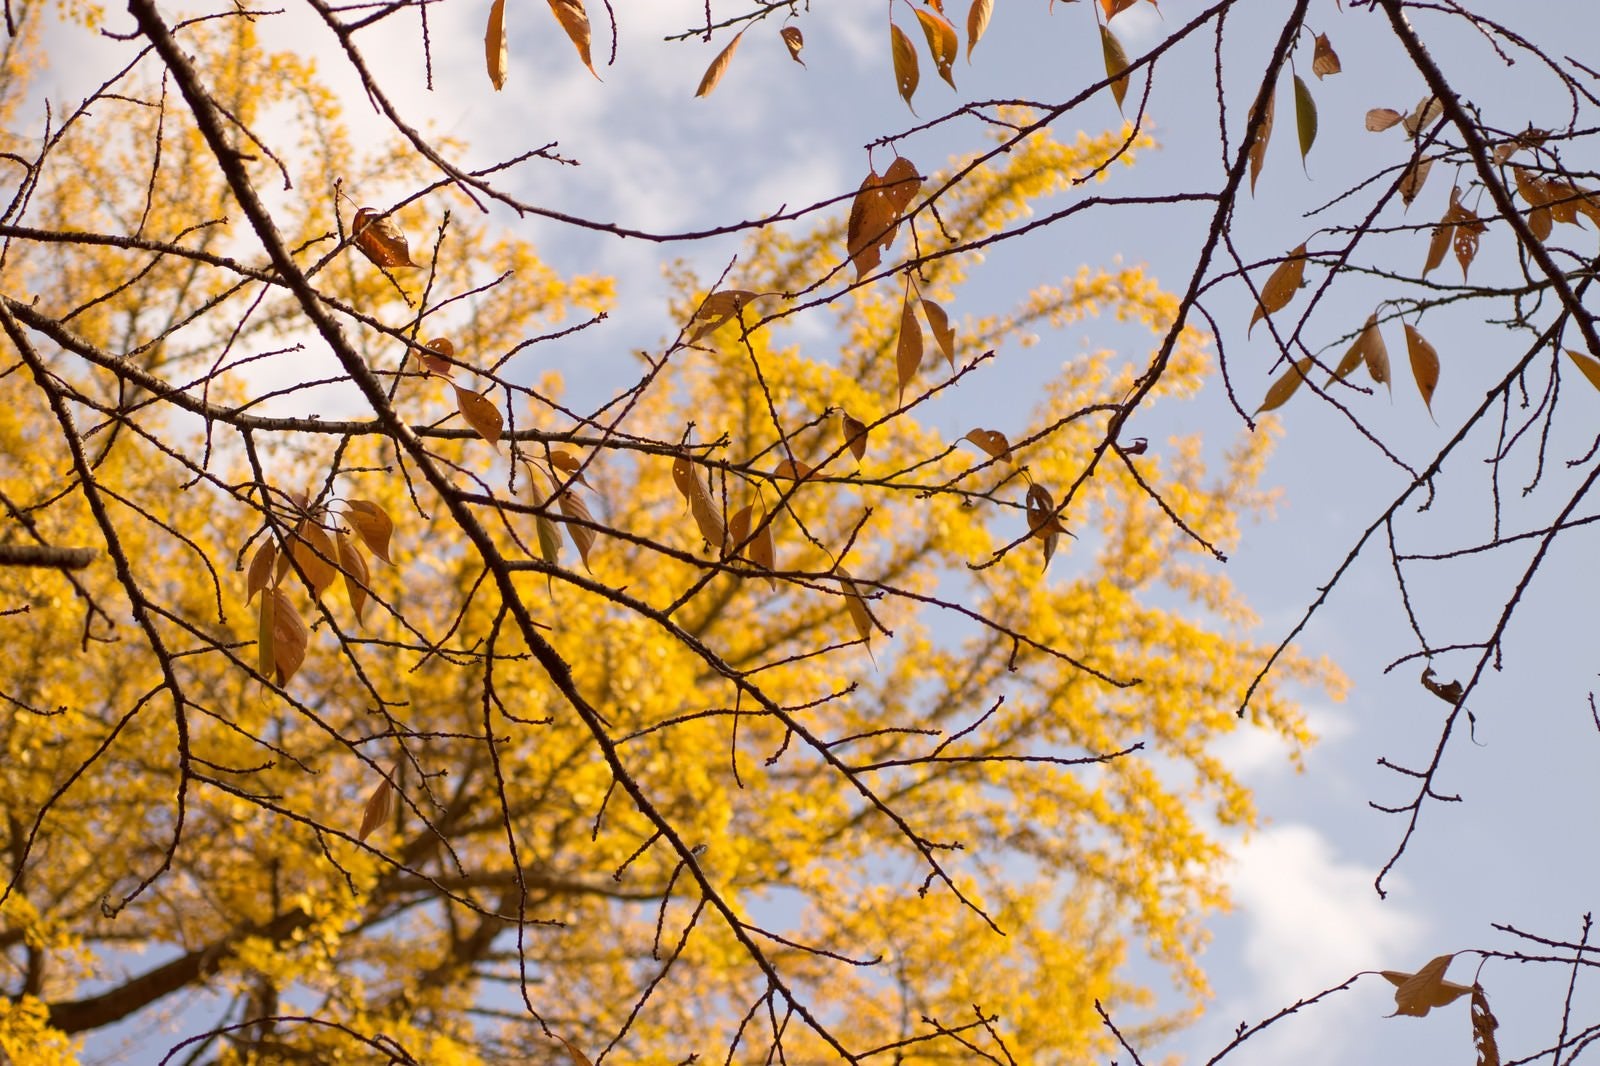 「枯葉と黄色く色づいた銀杏」の写真